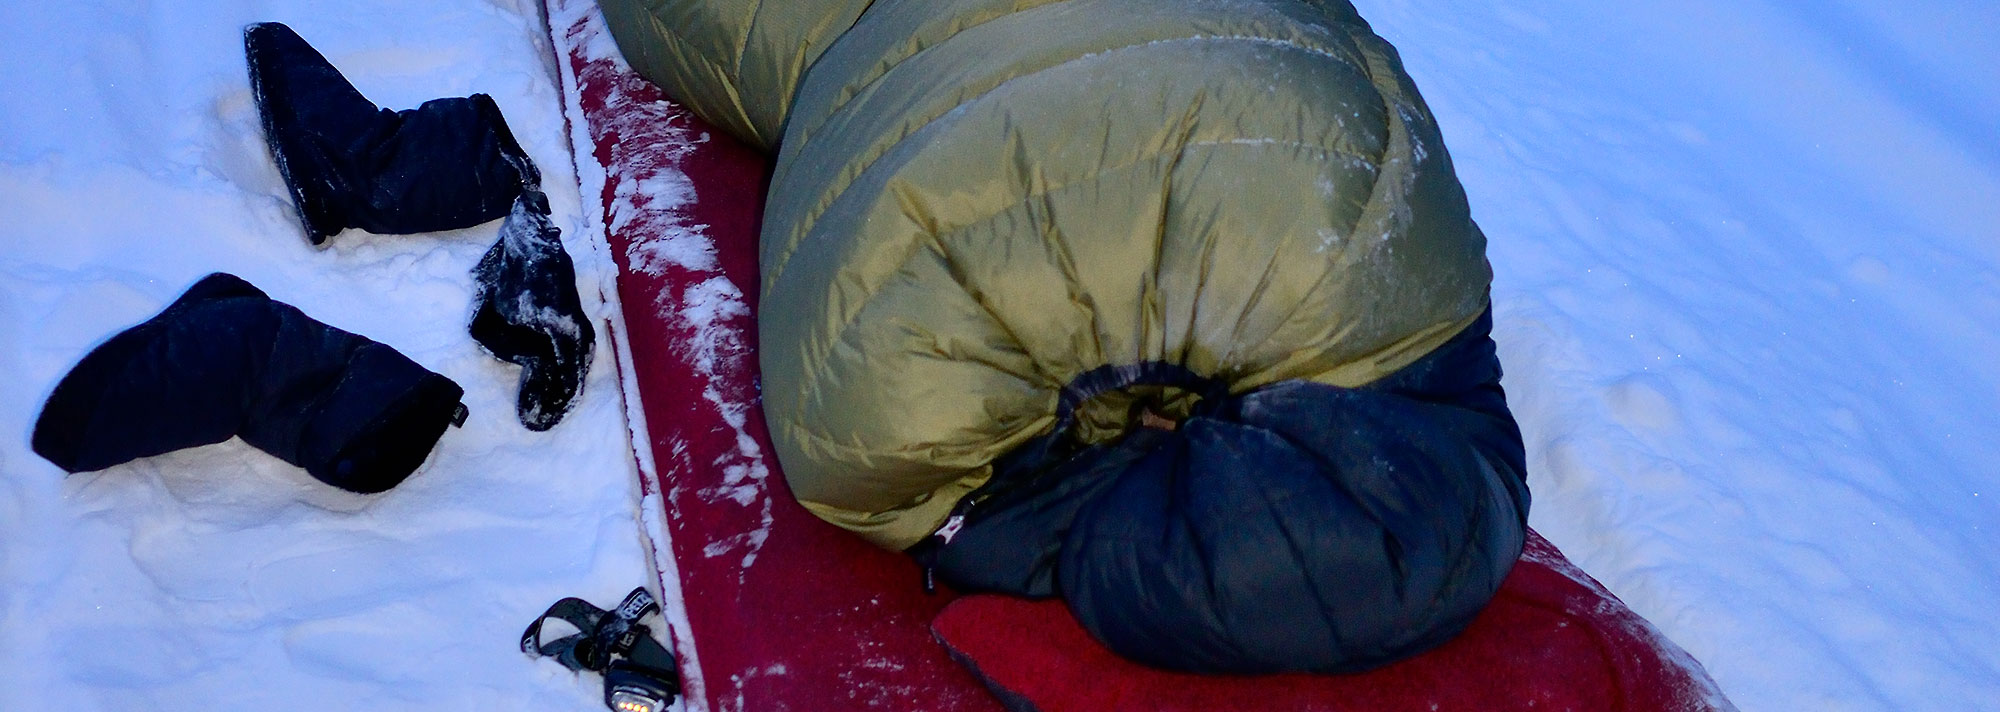 Alaska backpacking sleeping bag information. Hiking in Alaska.